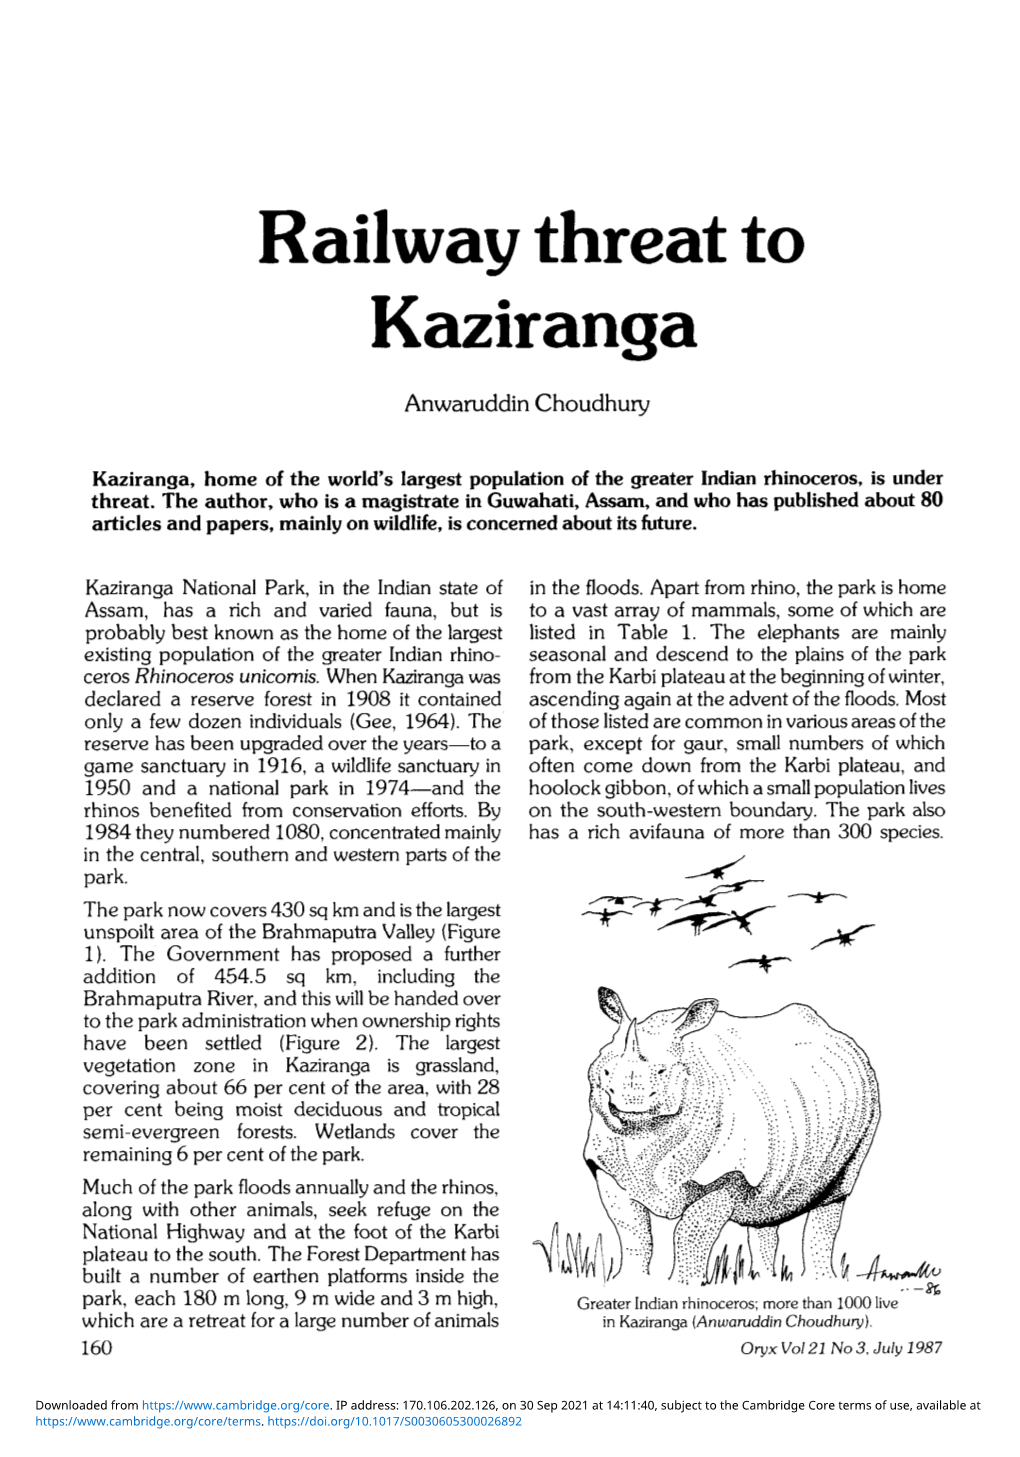 Railway Threat to Kaziranga